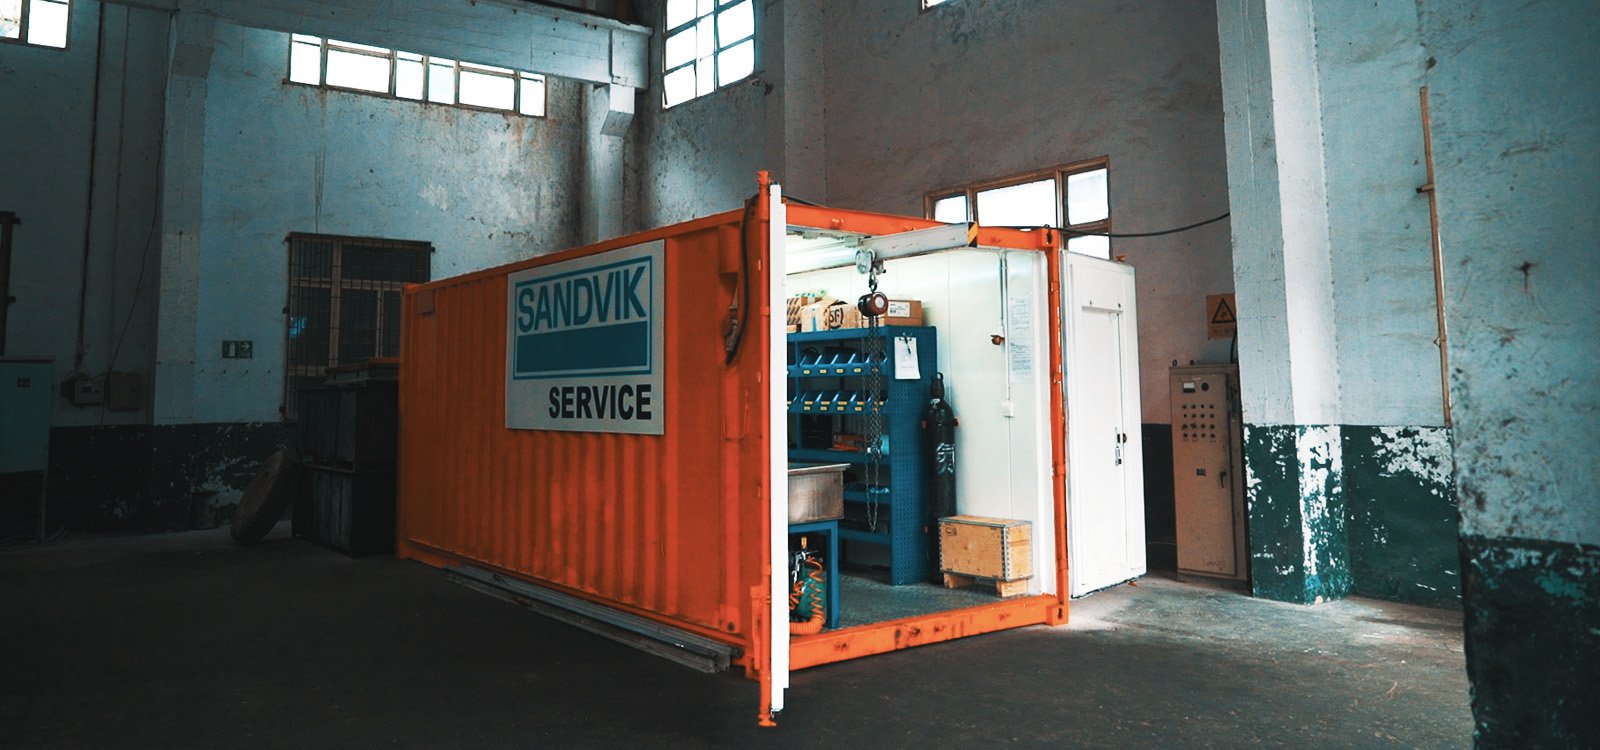 <p>O contêiner, fornecido pela Sandvik, contém equipamentos de manutenção e uma estação de trabalho.</p>